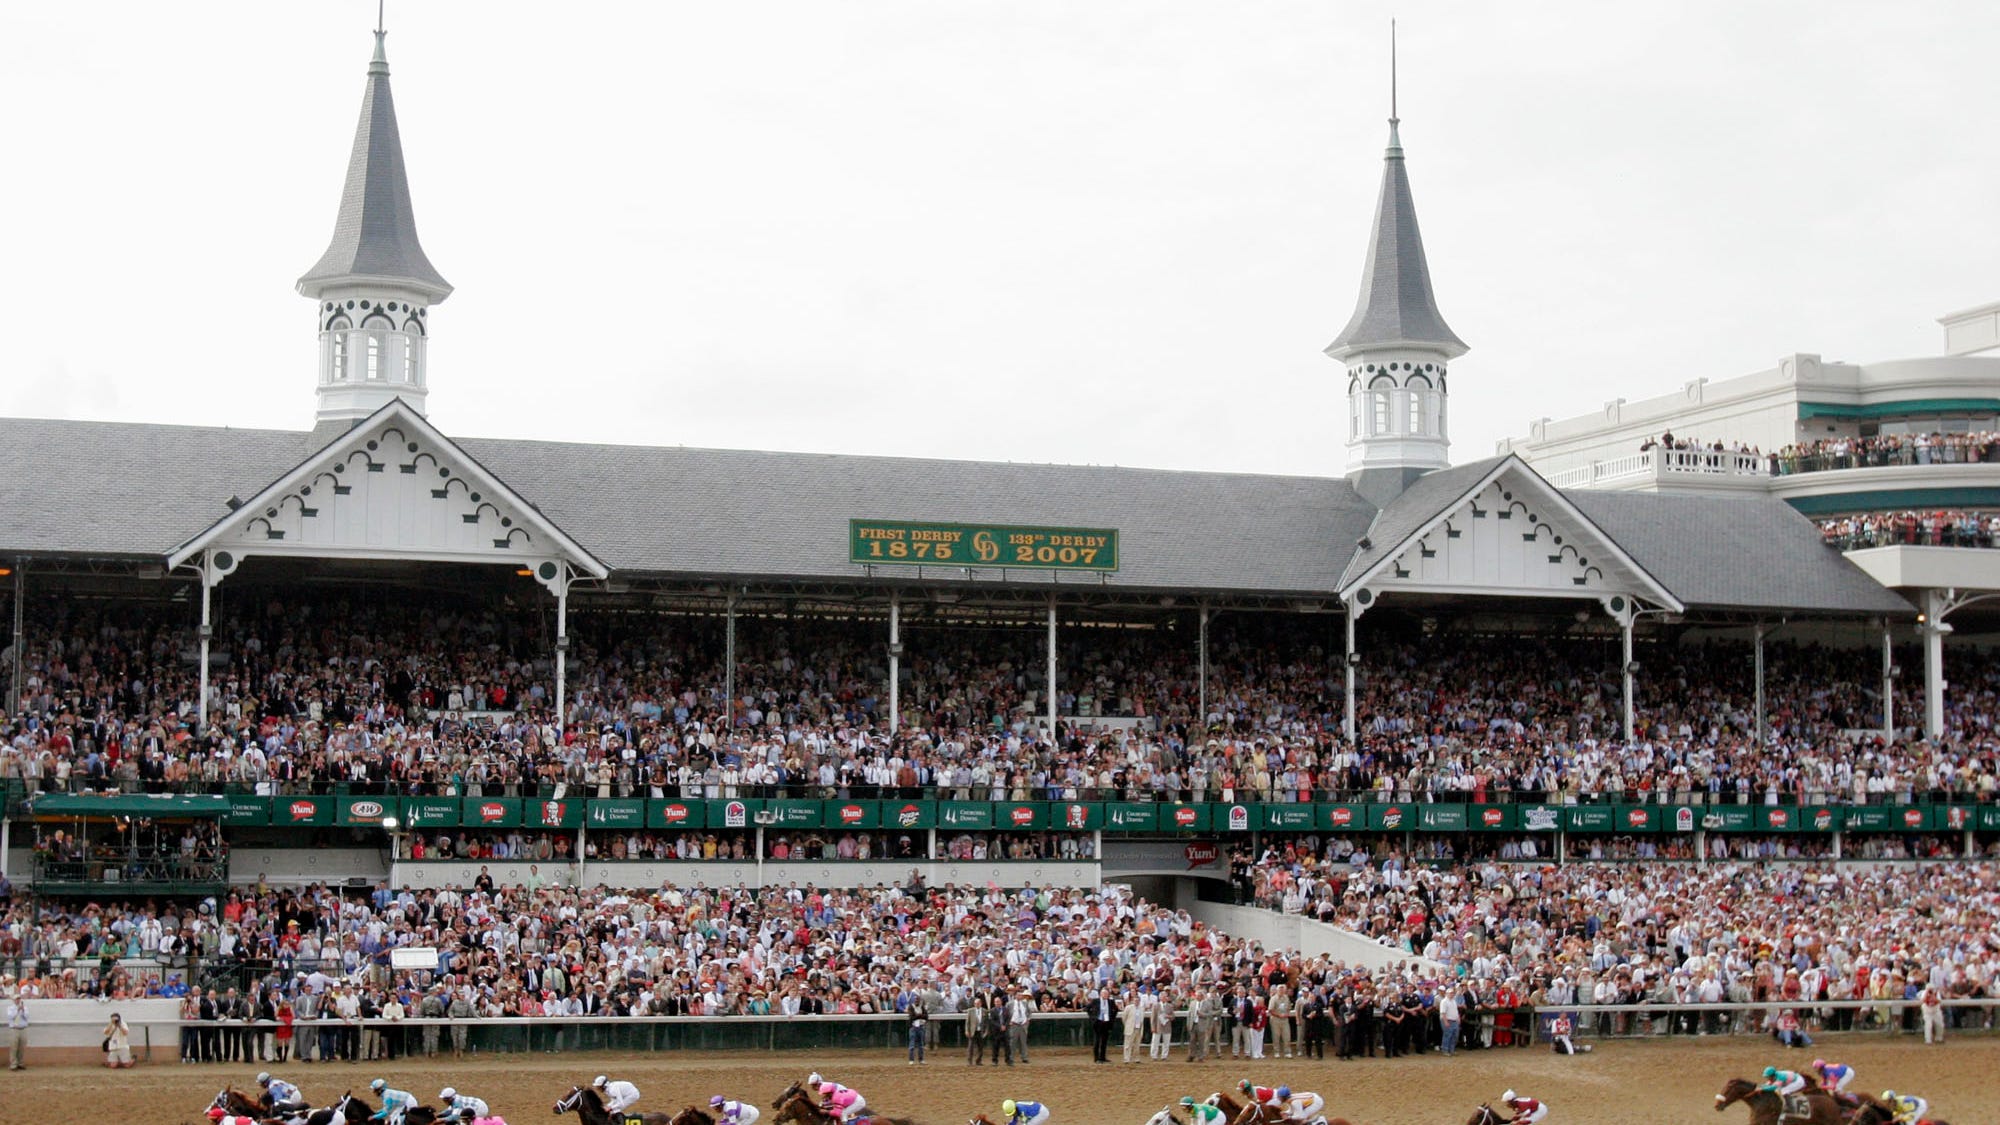 Postcard - Horse Racing 2014 Kentucky Derby at Churchill Downs Louisville KY 